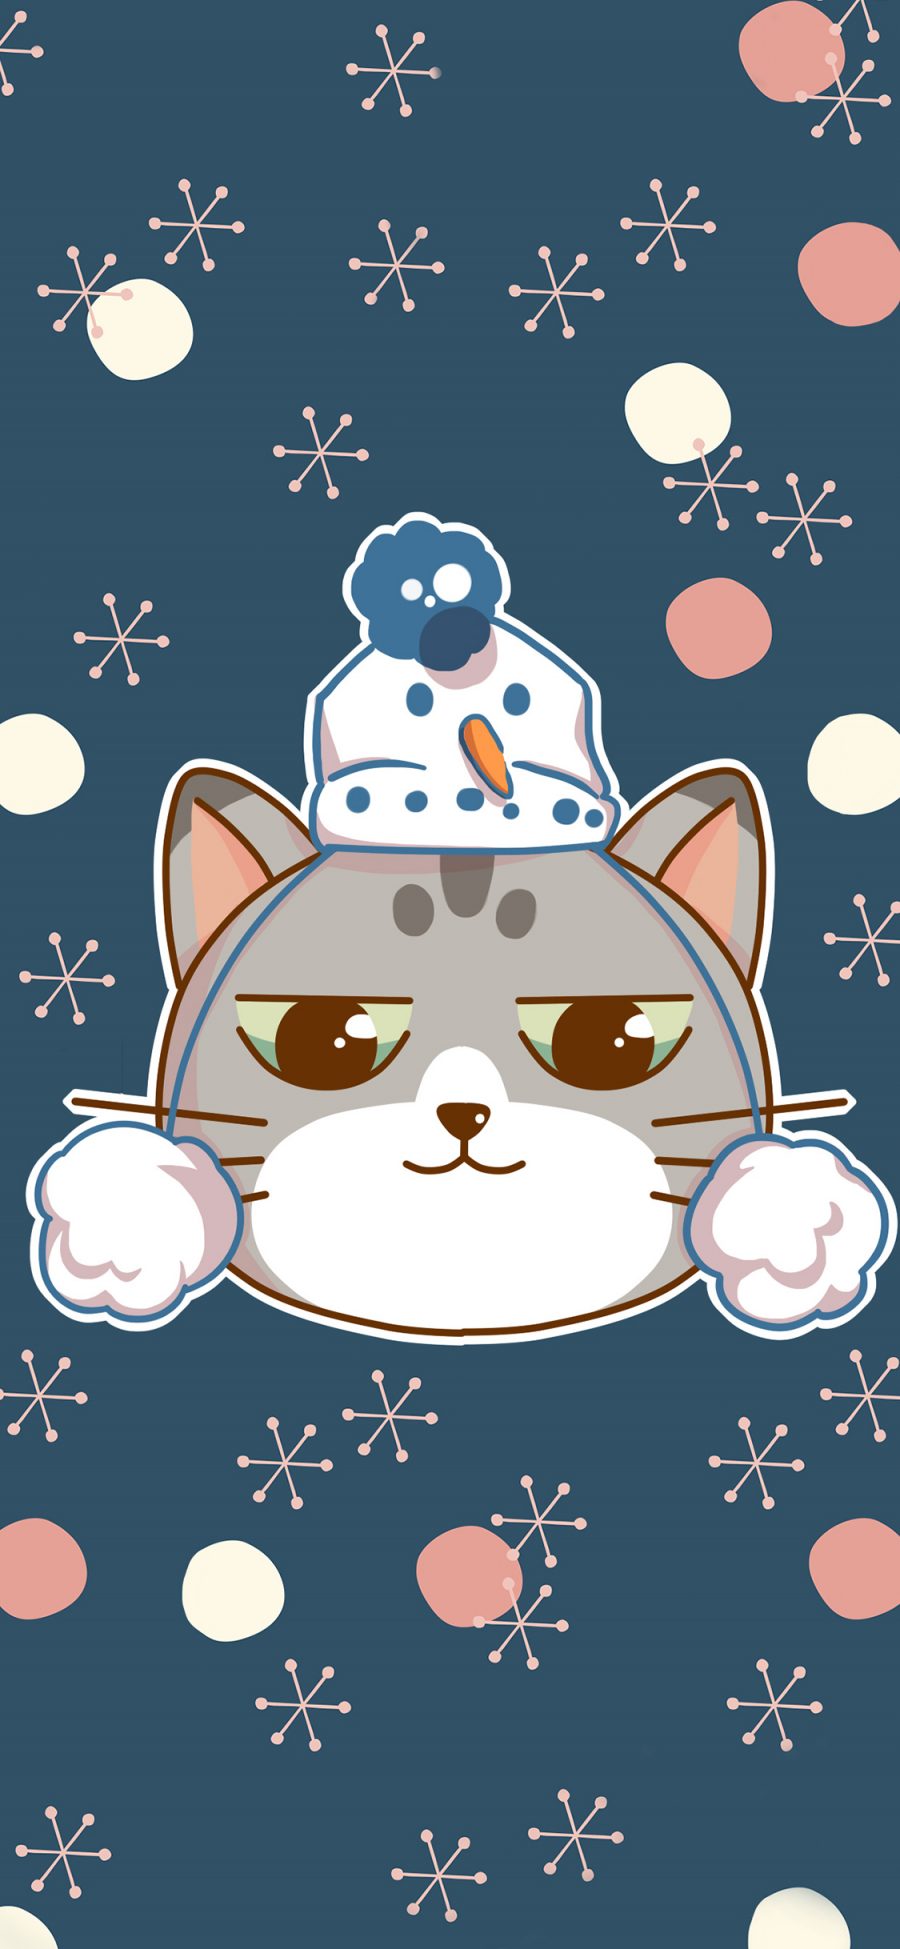 [2436×1125]猫咪 可爱 卡通 雪花 苹果手机动漫壁纸图片